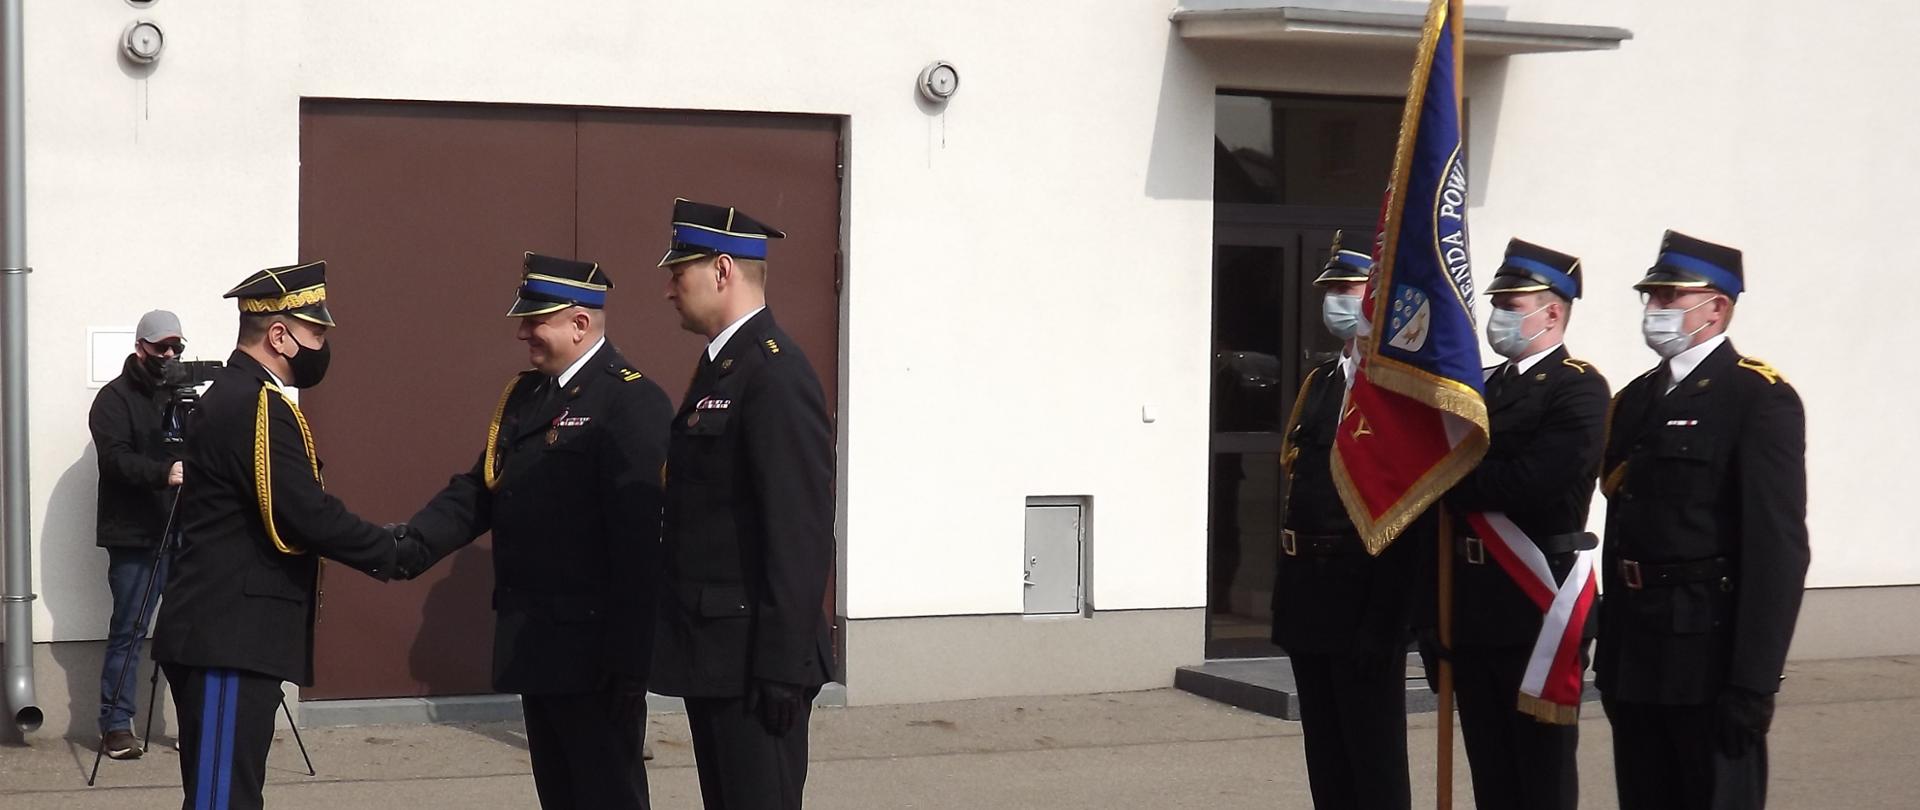 Na zdjęciu widać Komendanta Wojewódzkiego PSP w Olsztynie oraz komendantów PSP z NML wraz z pocztem sztandarowym